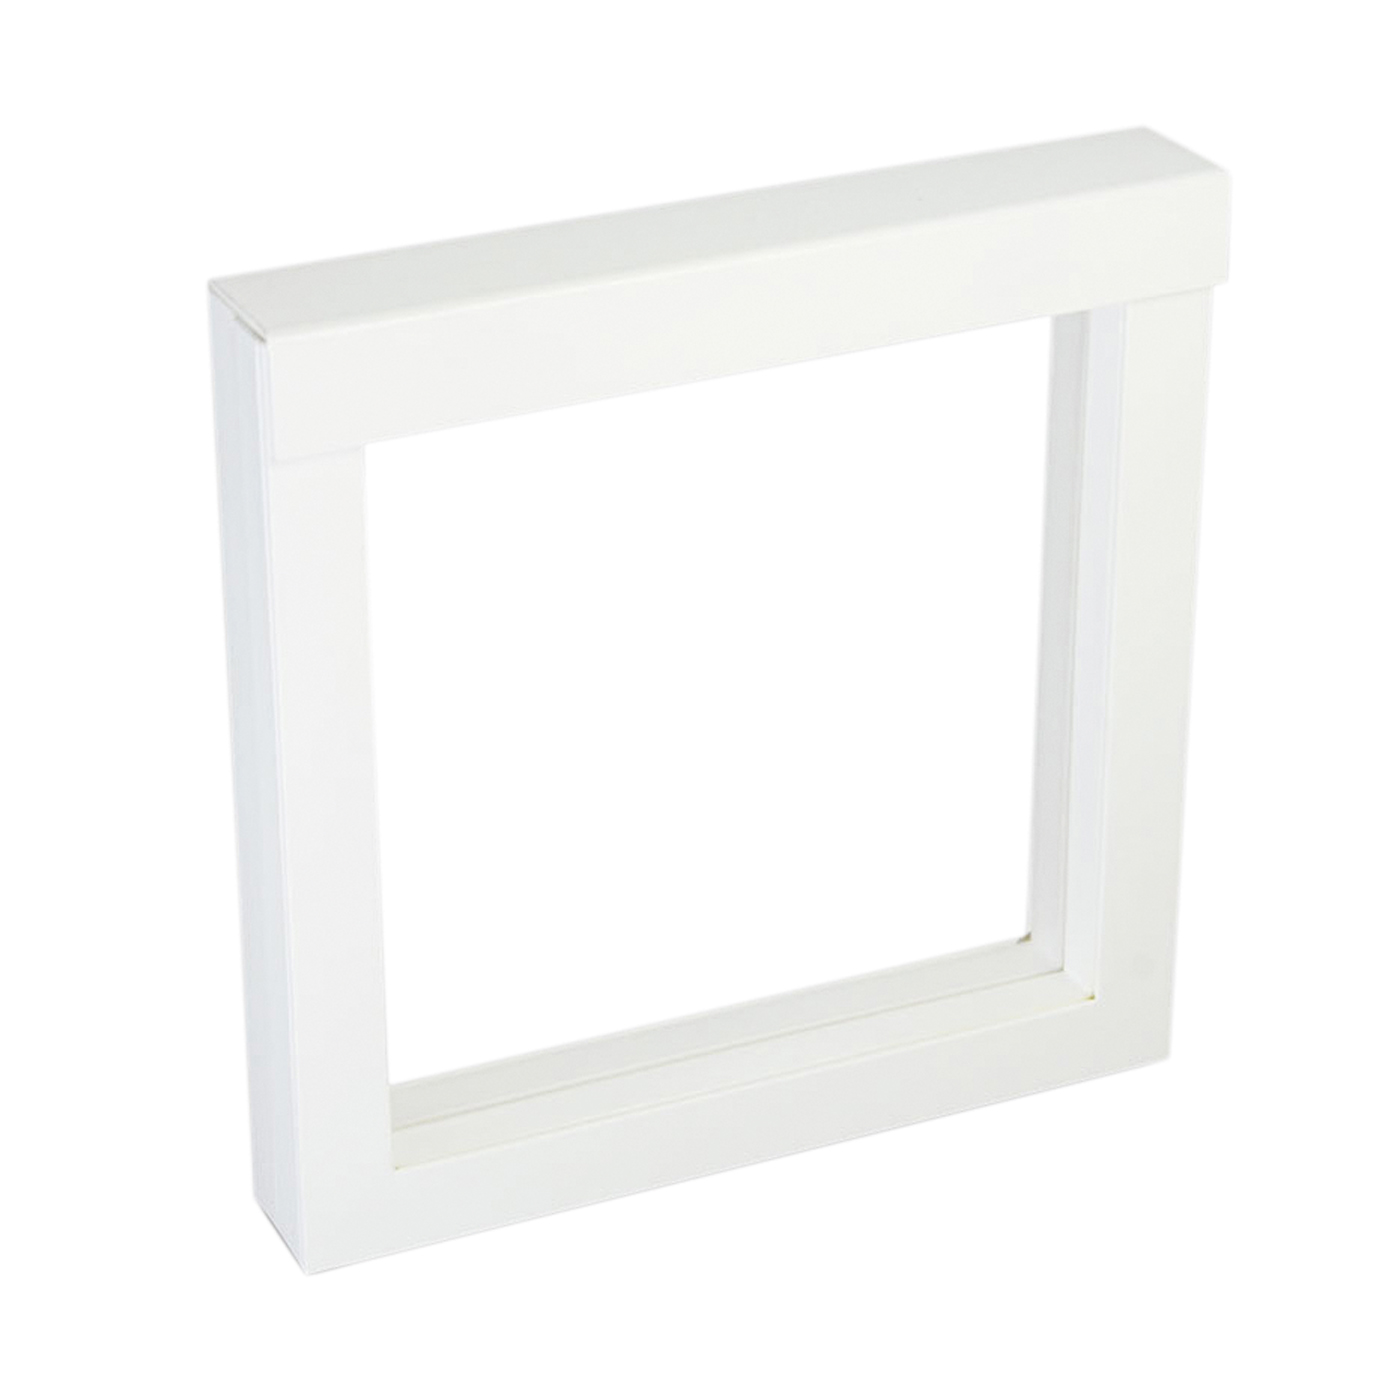 Schmucketui "Frame", weiß, 150 x 150 x 25 mm - 1 Stück